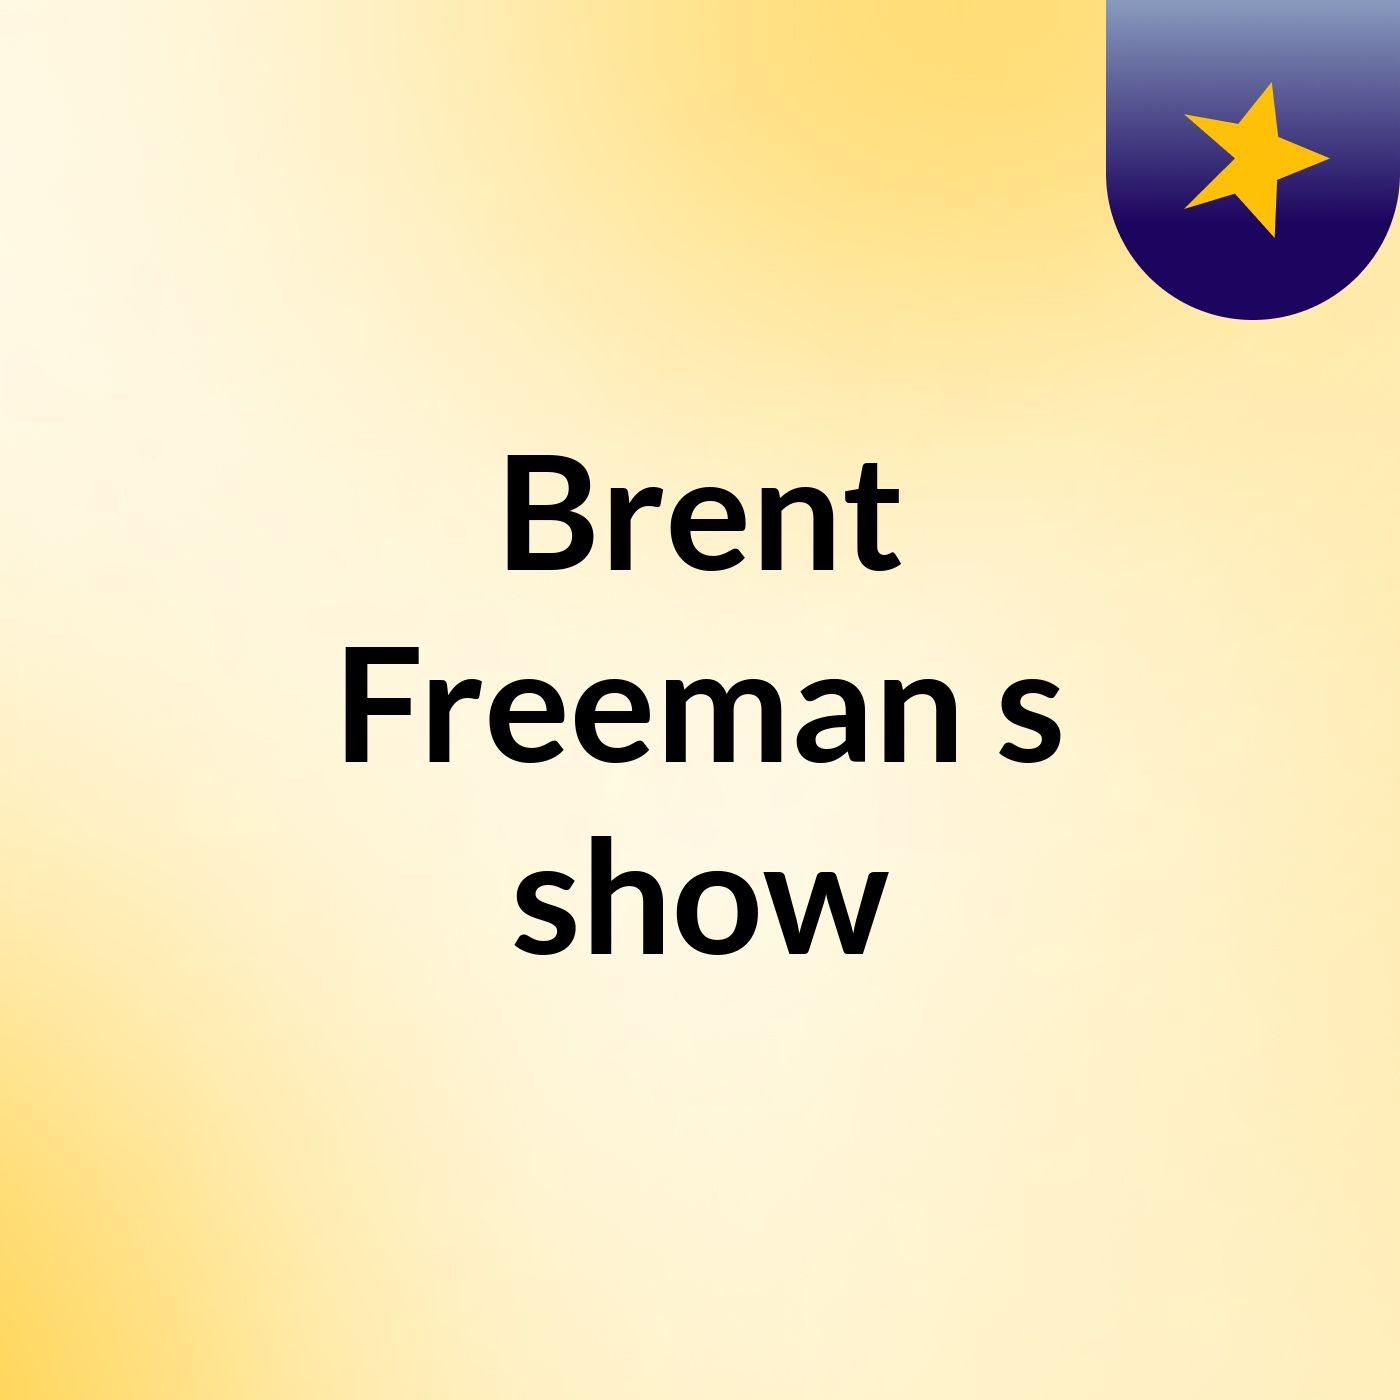 Episode 19 - Brent Freeman's show